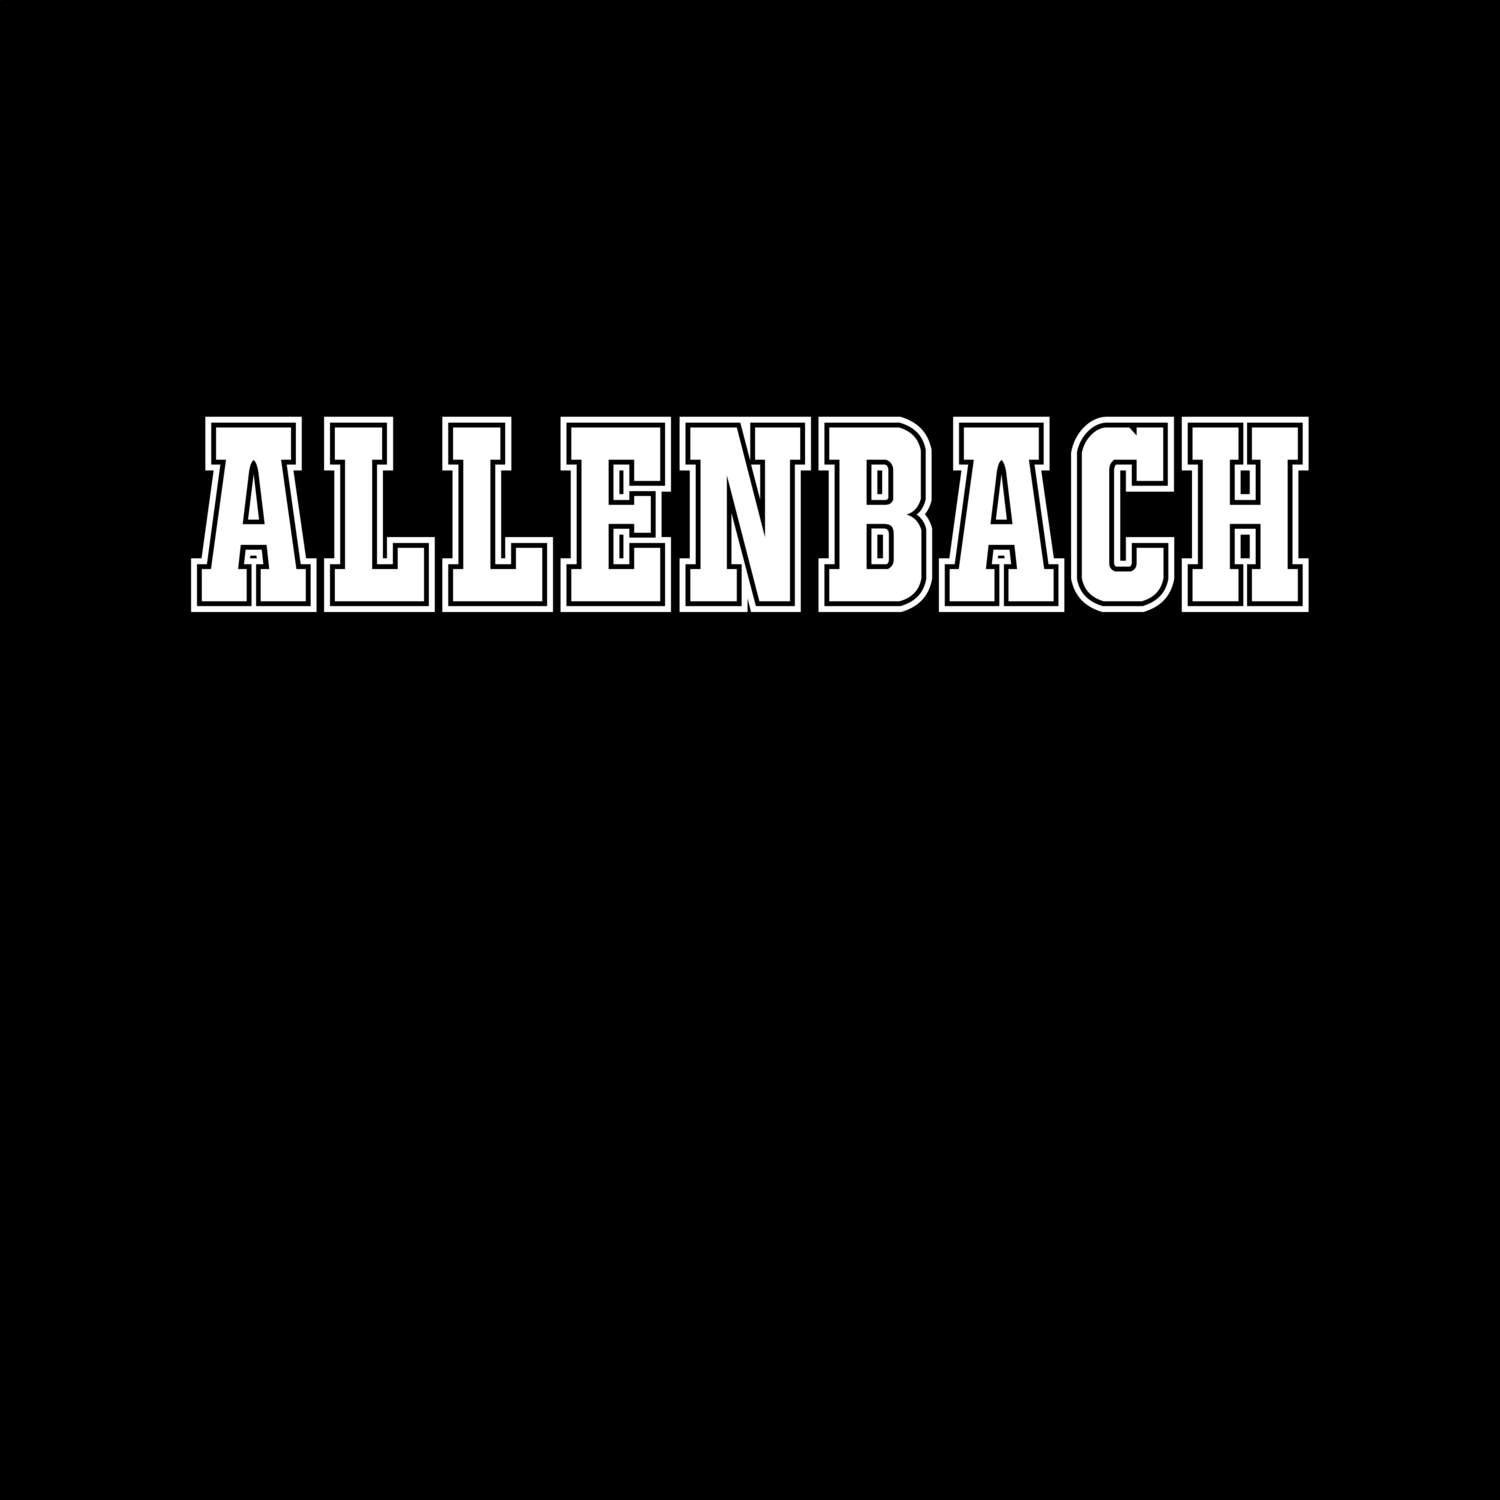 Allenbach T-Shirt »Classic«